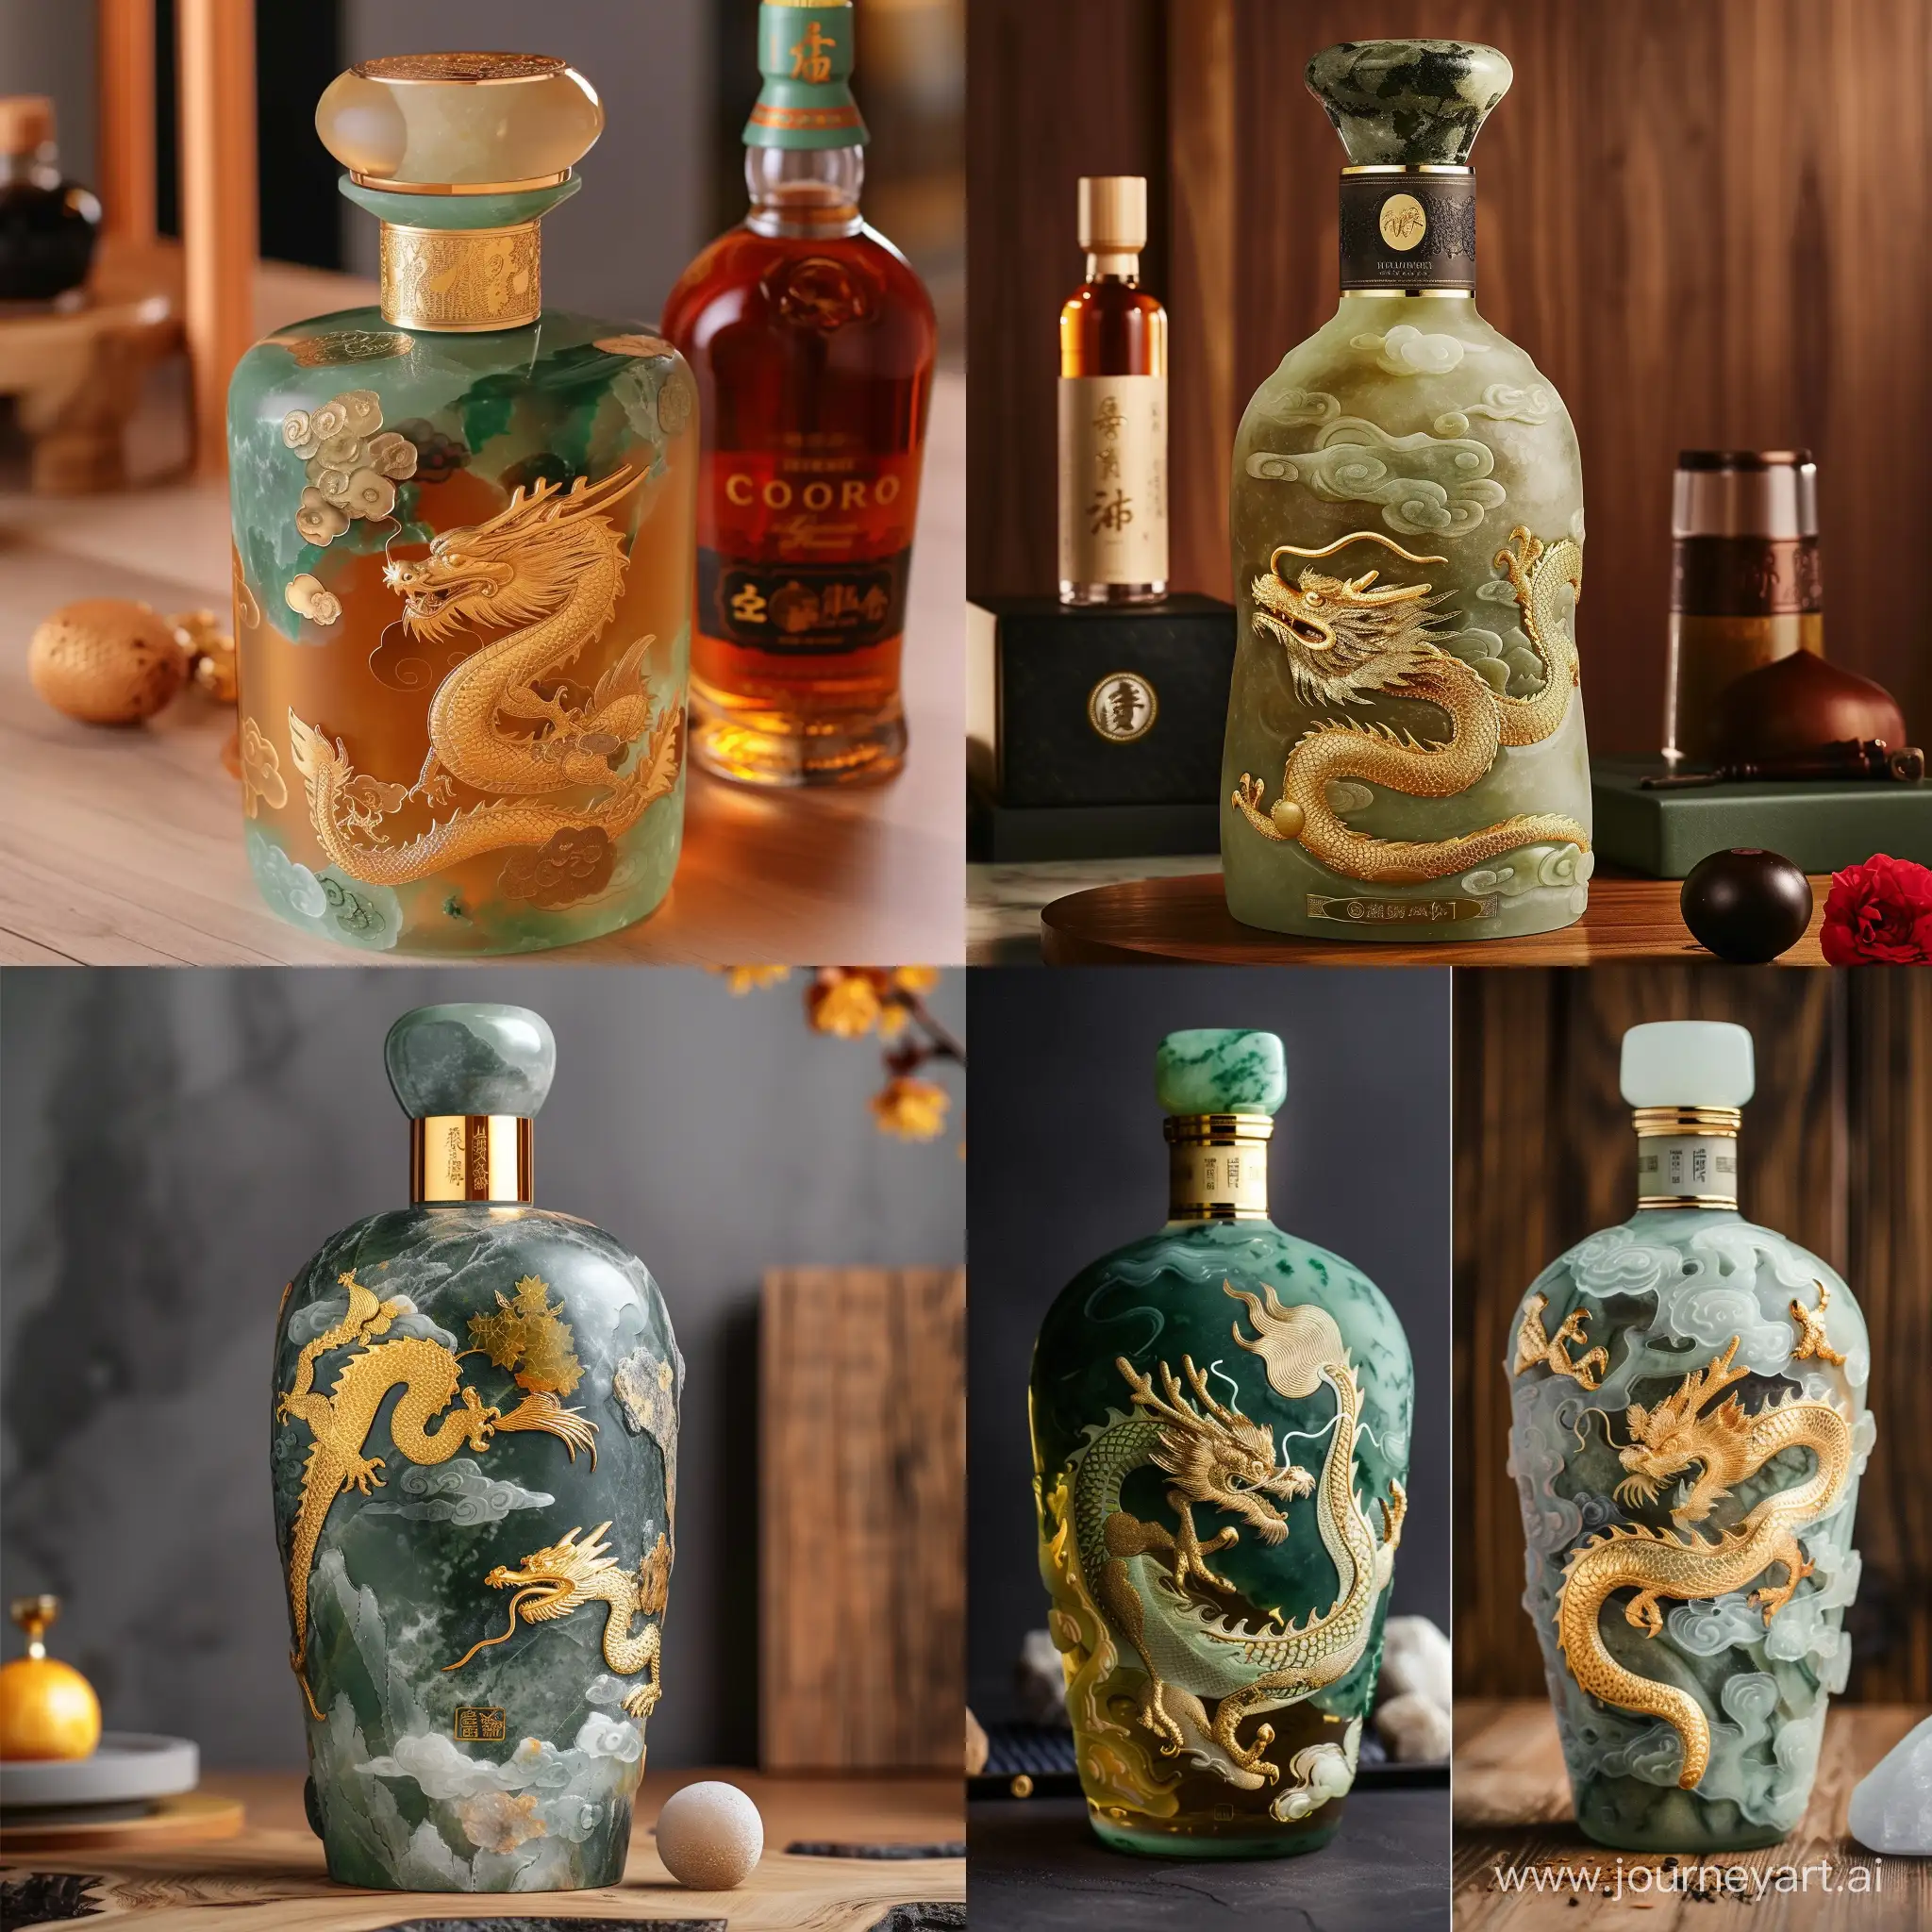 Crea una botella de whisky con un material de jade y oro. Edición limitada celebrando el aniversario número 100 de la empresa, y además con un diseño de dragón haciendo referencia al año nuevo chino.